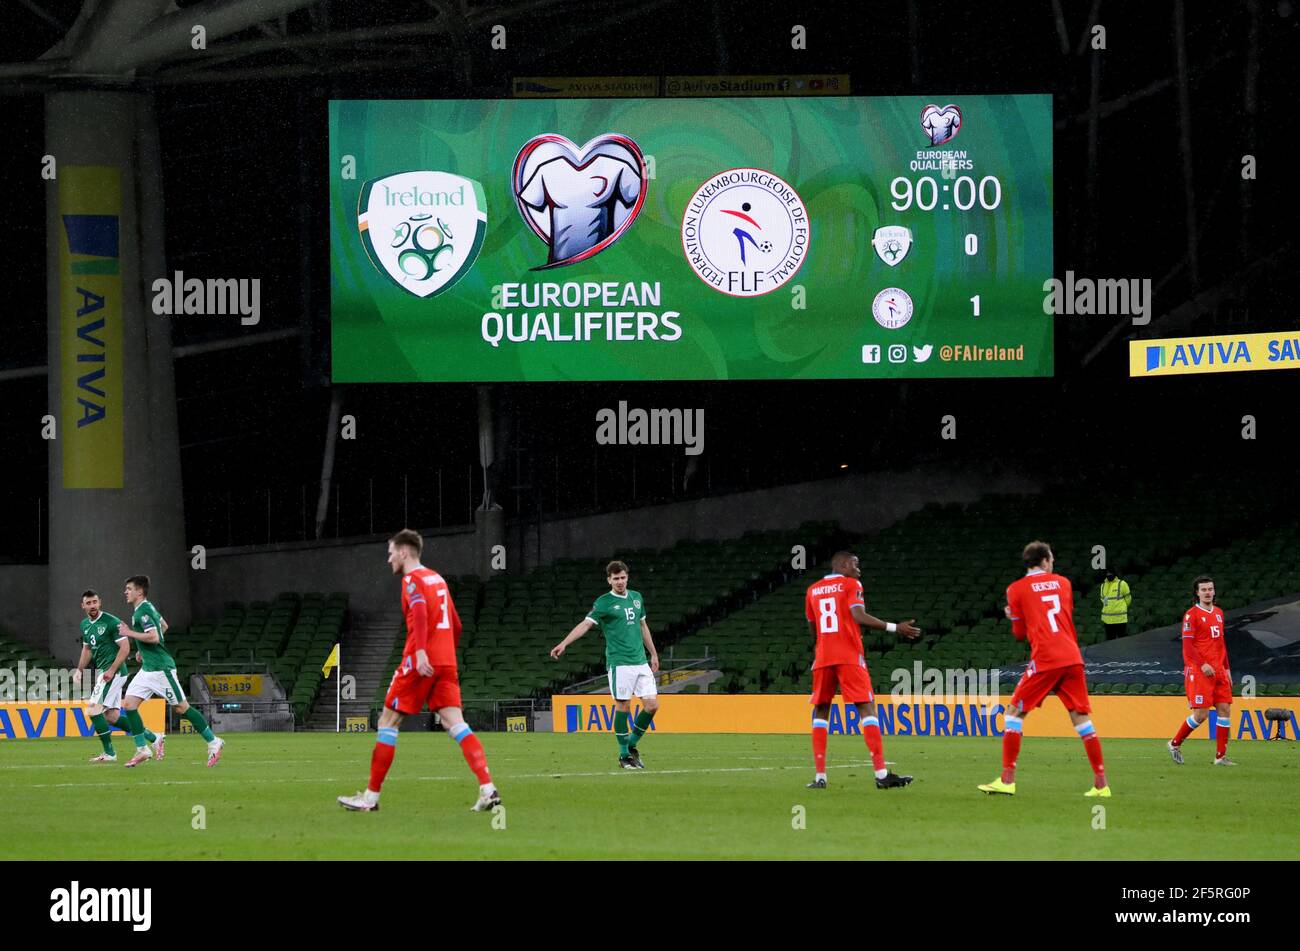 fifa world cup 2022 scoreboard